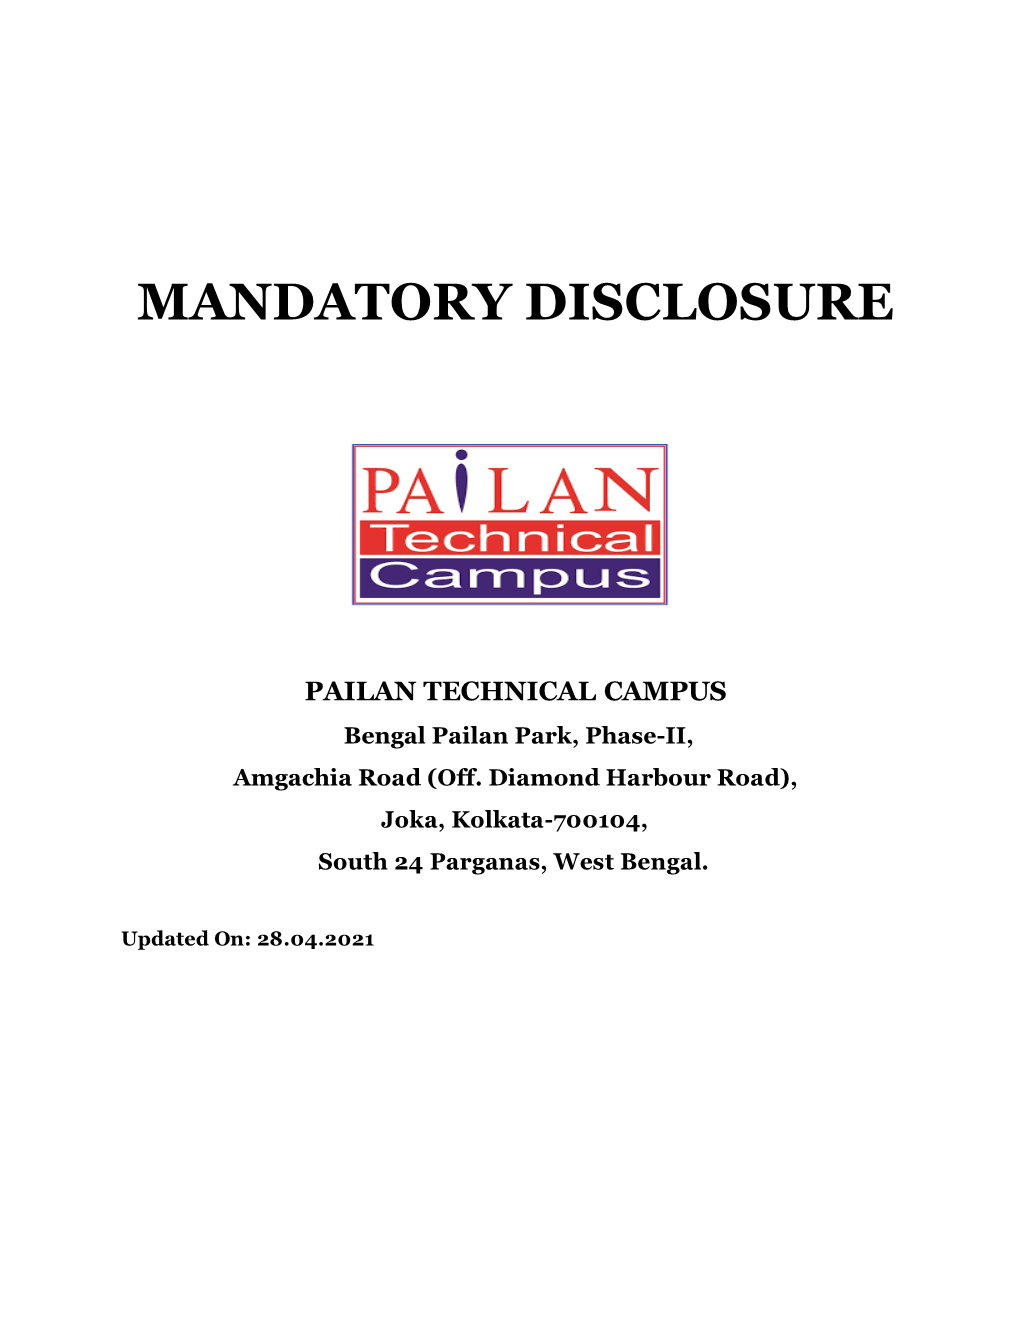 Mandatory Disclosure 2021